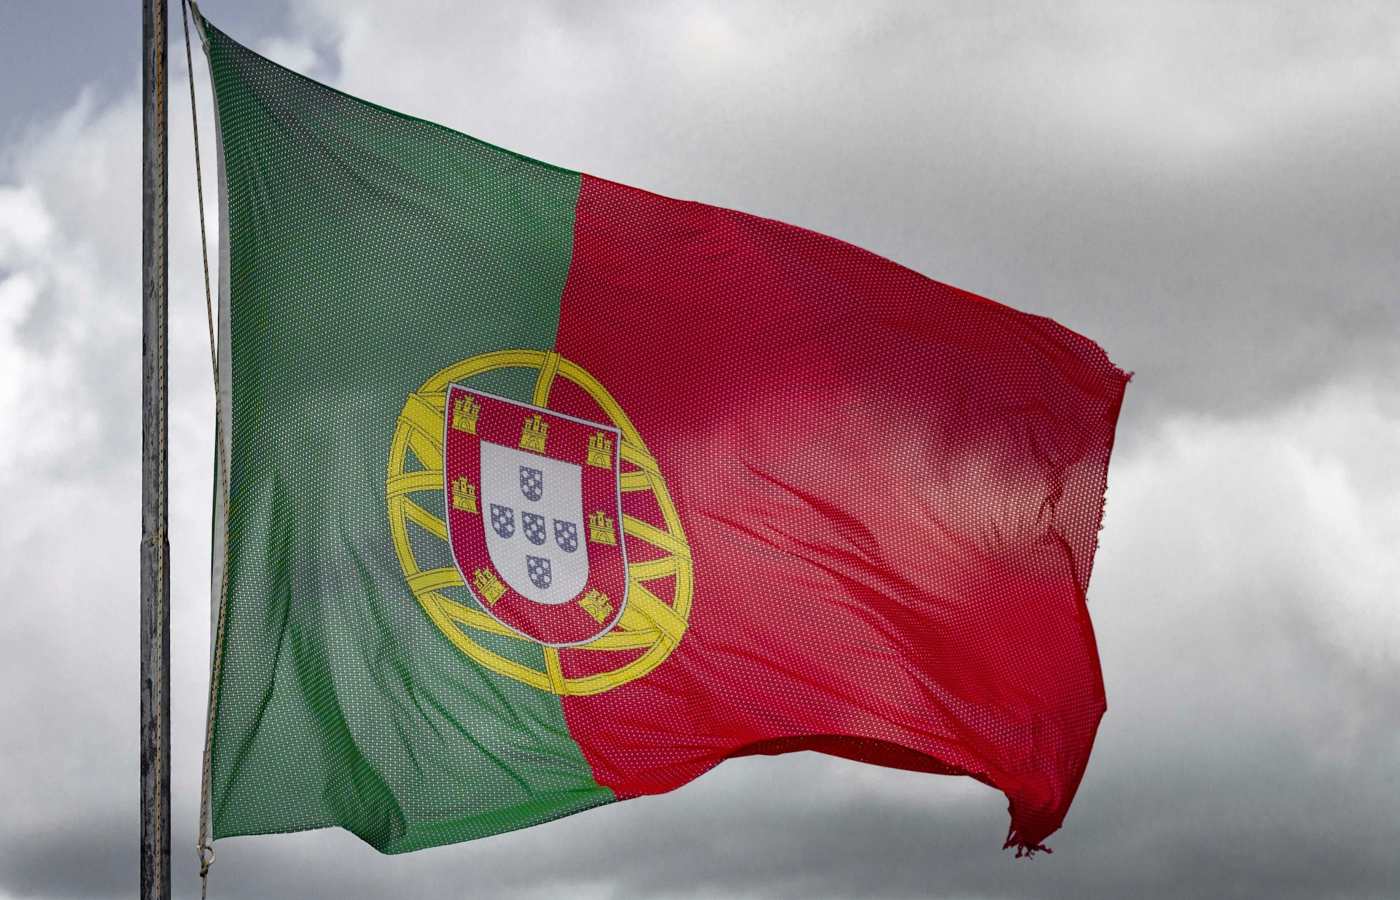 Bandeira de Portugal hasteada ao vento com céu nublado no fundo.